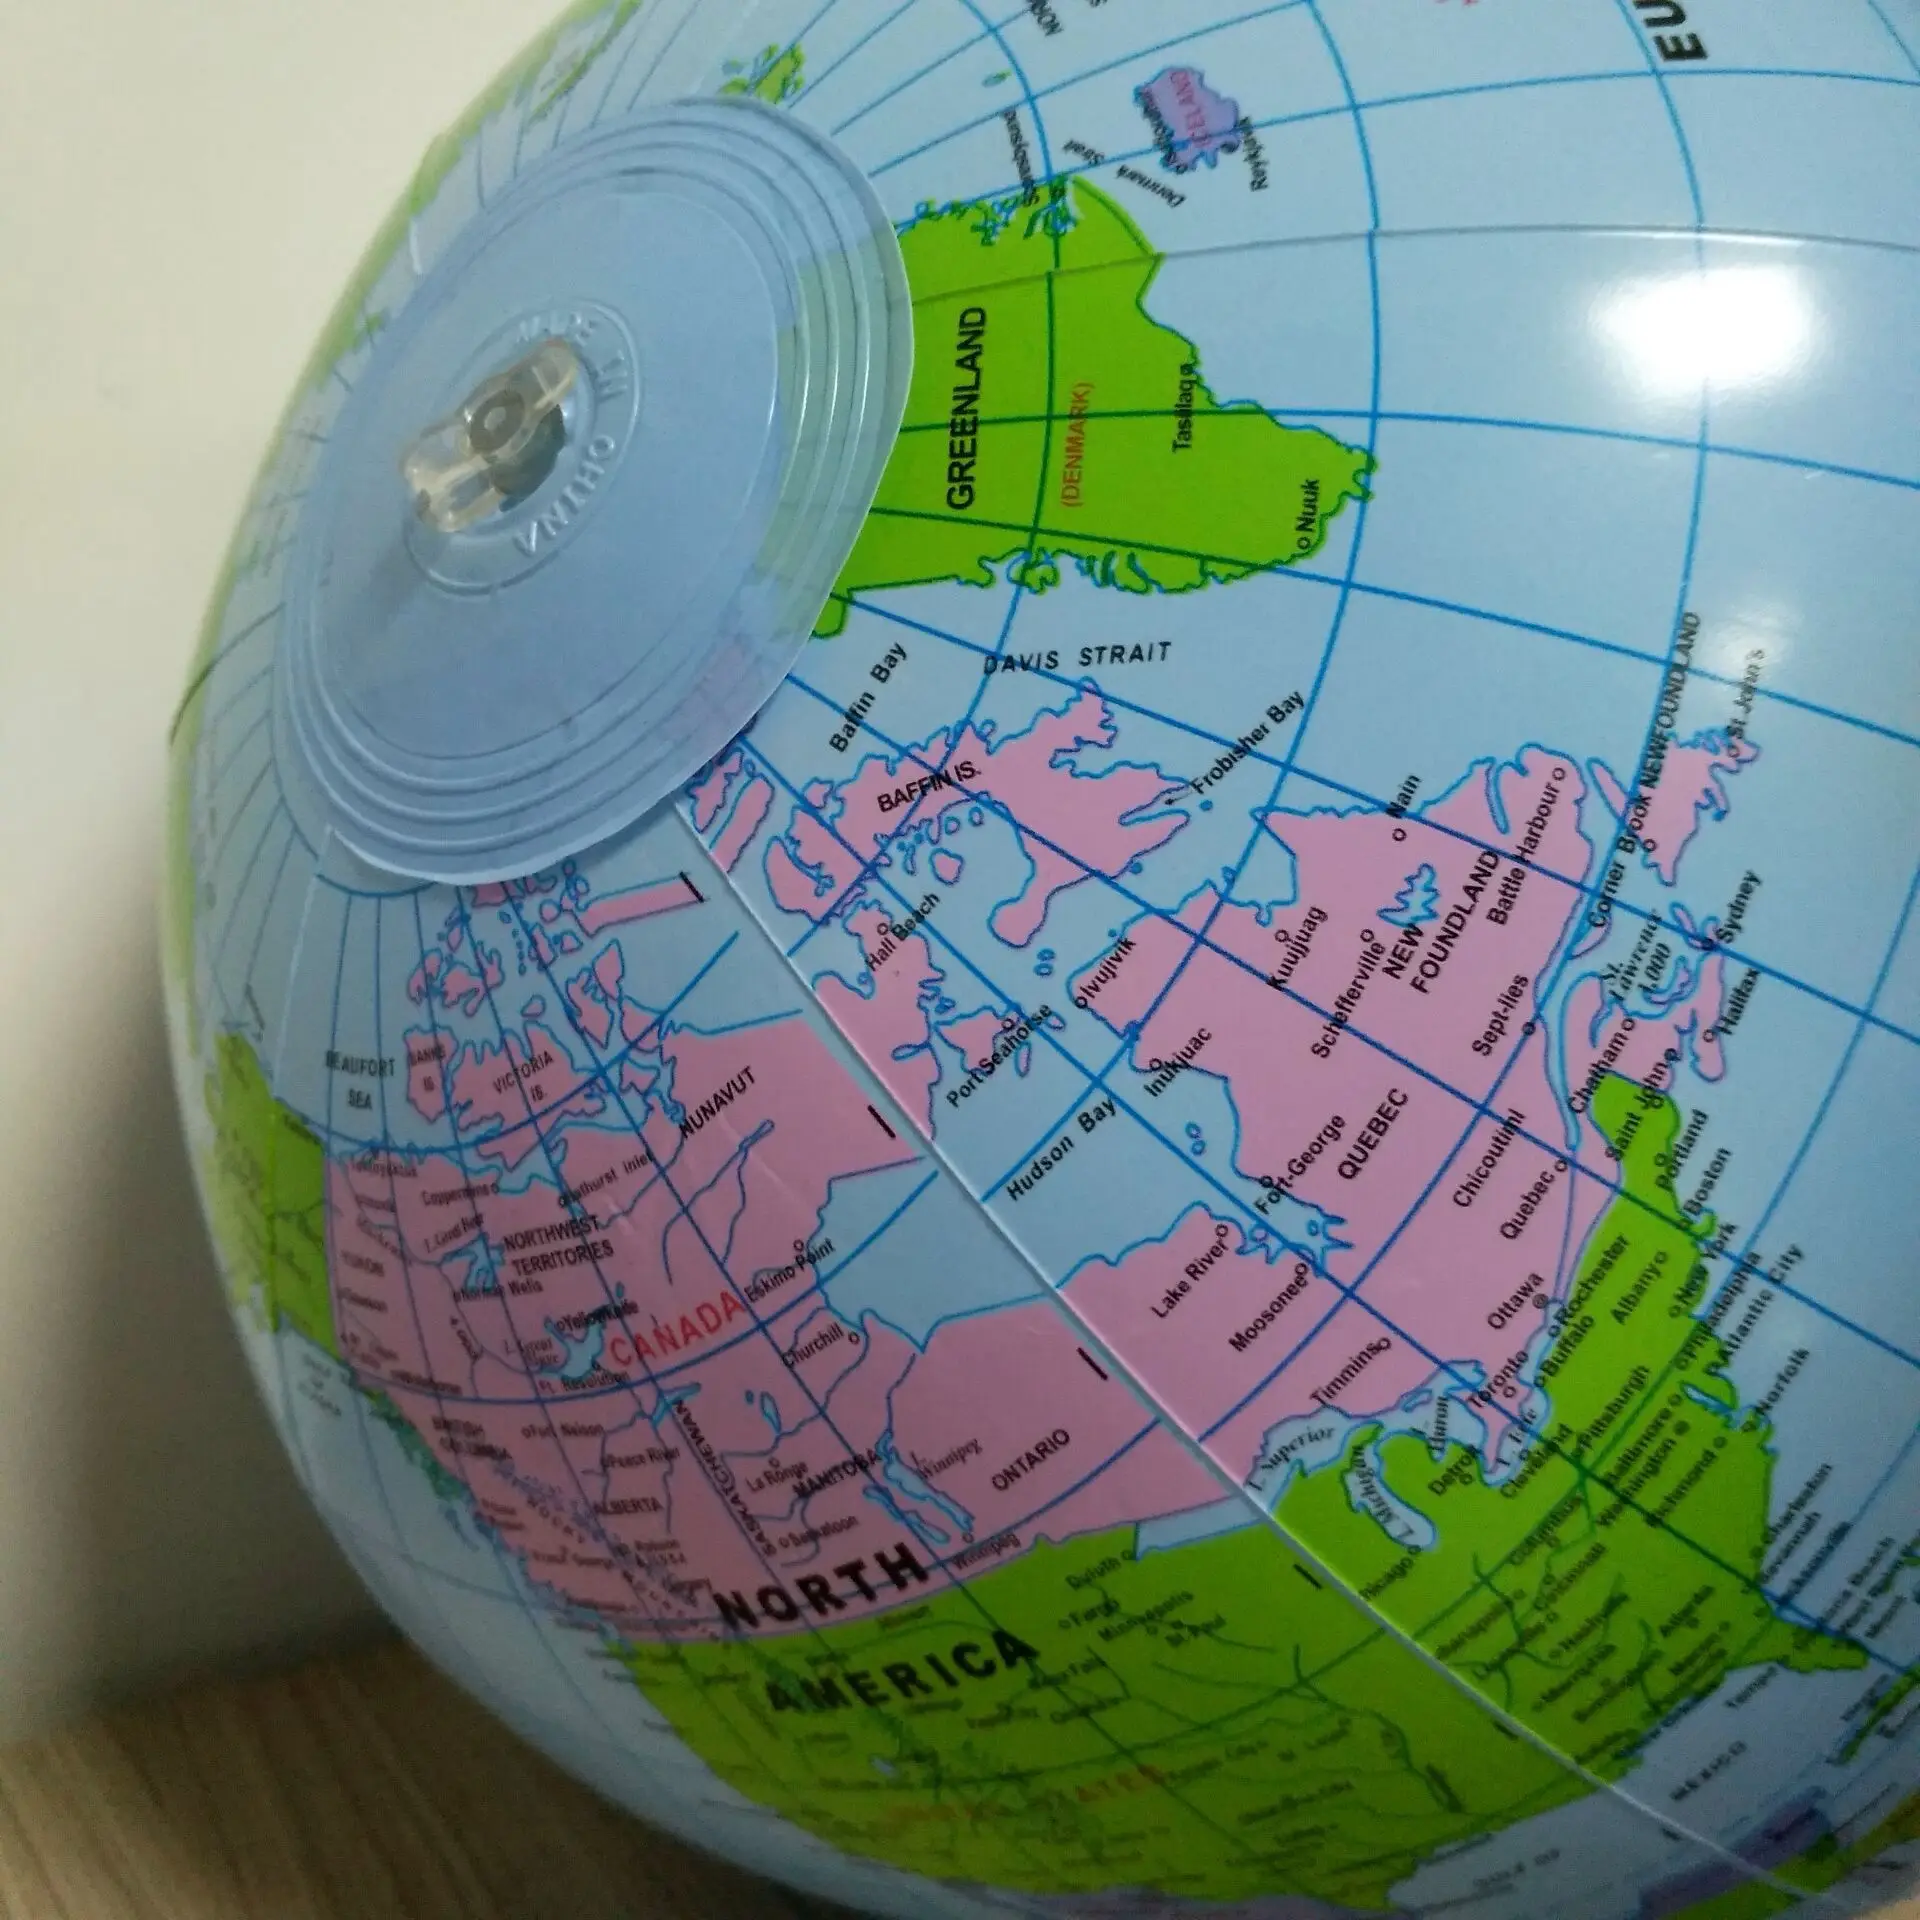 30 см надувной глобус Карта океана мира земной шар, обучающий развивающий пляжный мяч для детей, развивающие принадлежности